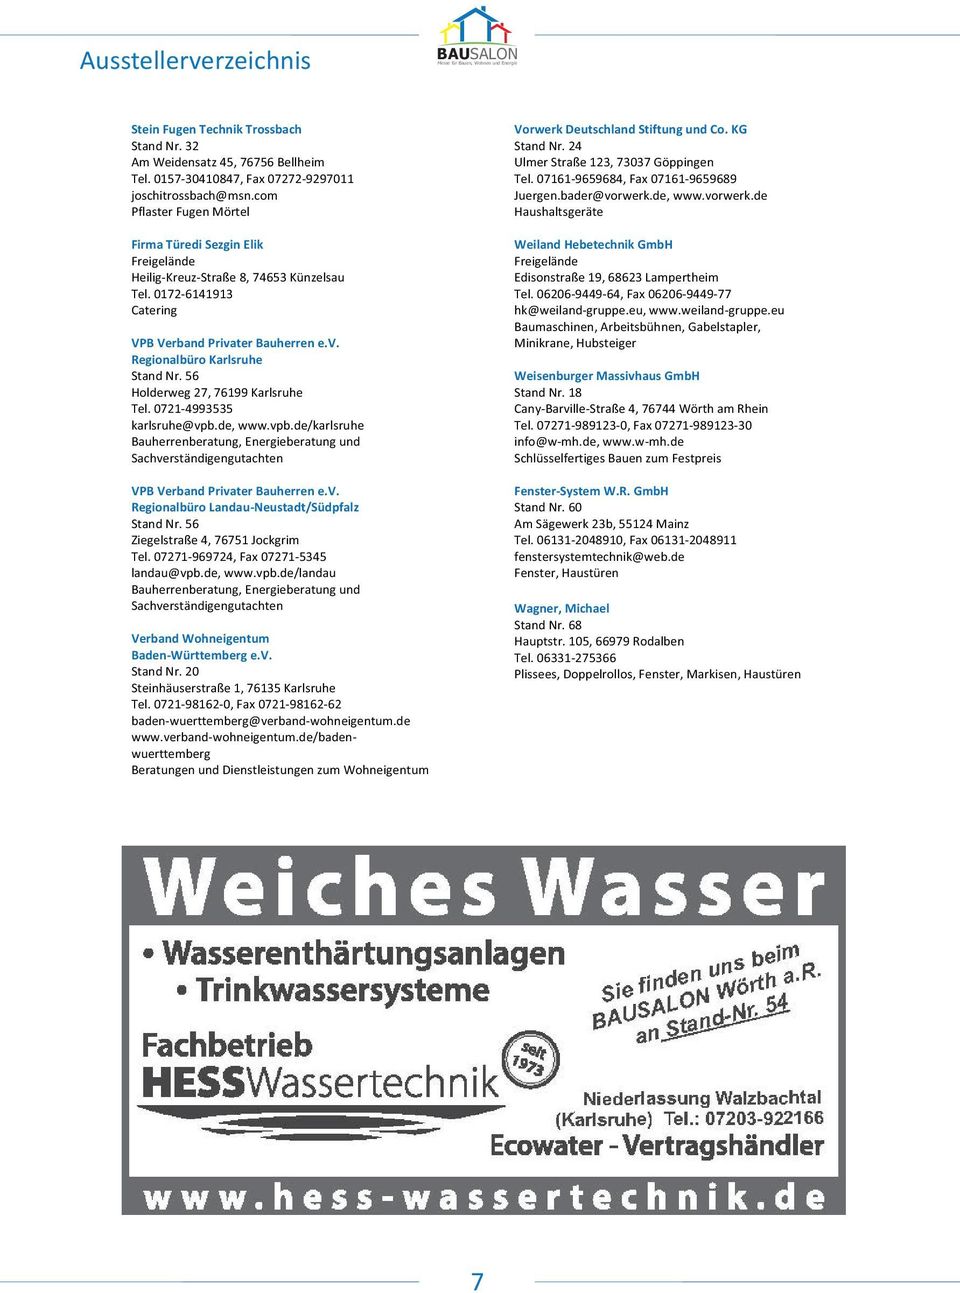 56 Holderweg 27, 76199 Karlsruhe Tel. 0721-4993535 karlsruhe@vpb.de, www.vpb.de/karlsruhe Bauherrenberatung, Energieberatung und Sachverständigengutachten Vorwerk Deutschland Stiftung und Co.